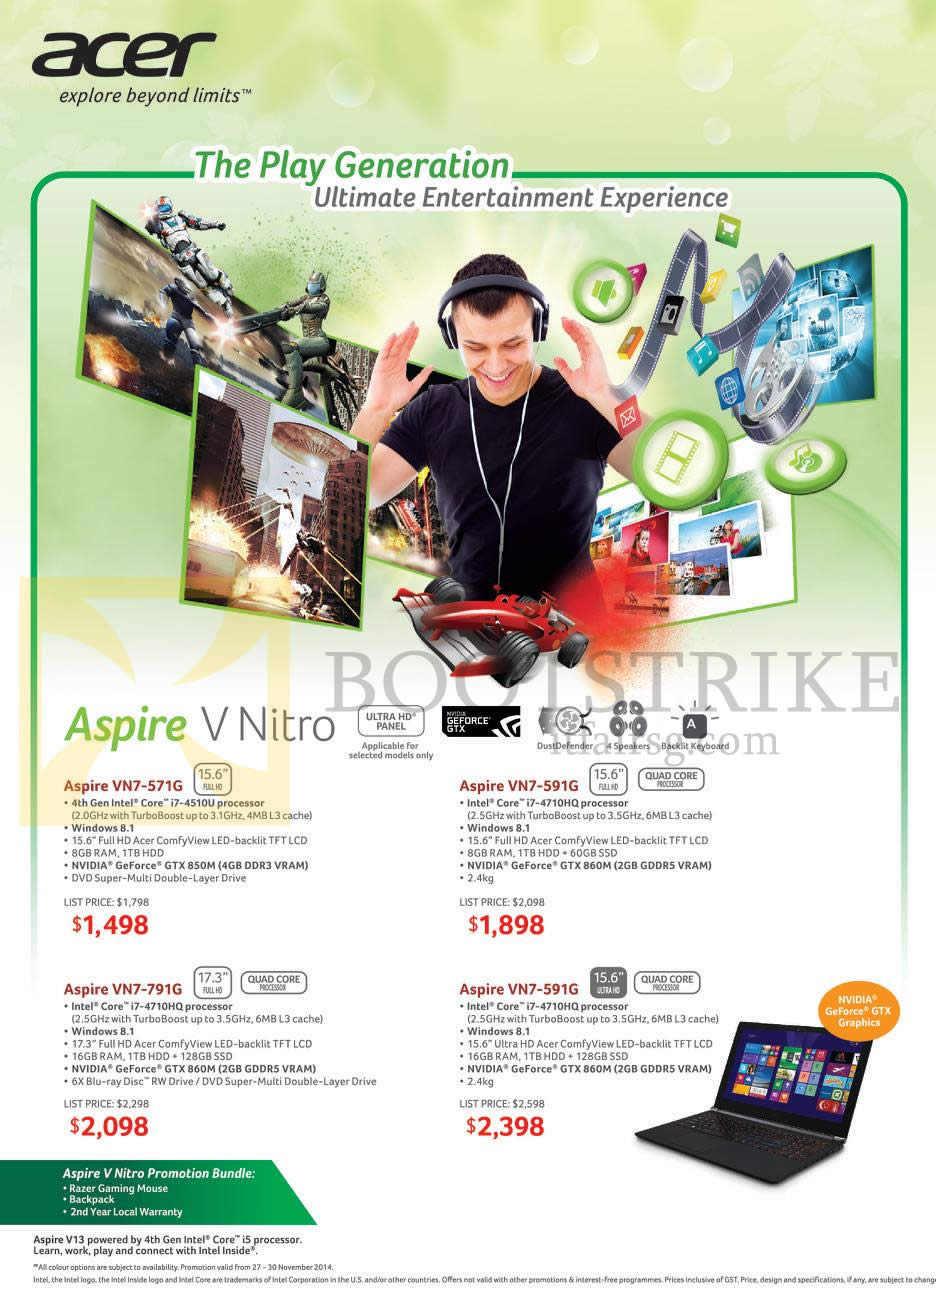 SITEX 2014 price list image brochure of Acer Notebooks Aspire V Nitro, VN7-571G, VN7-591G, VN7-791G, VN7-591G